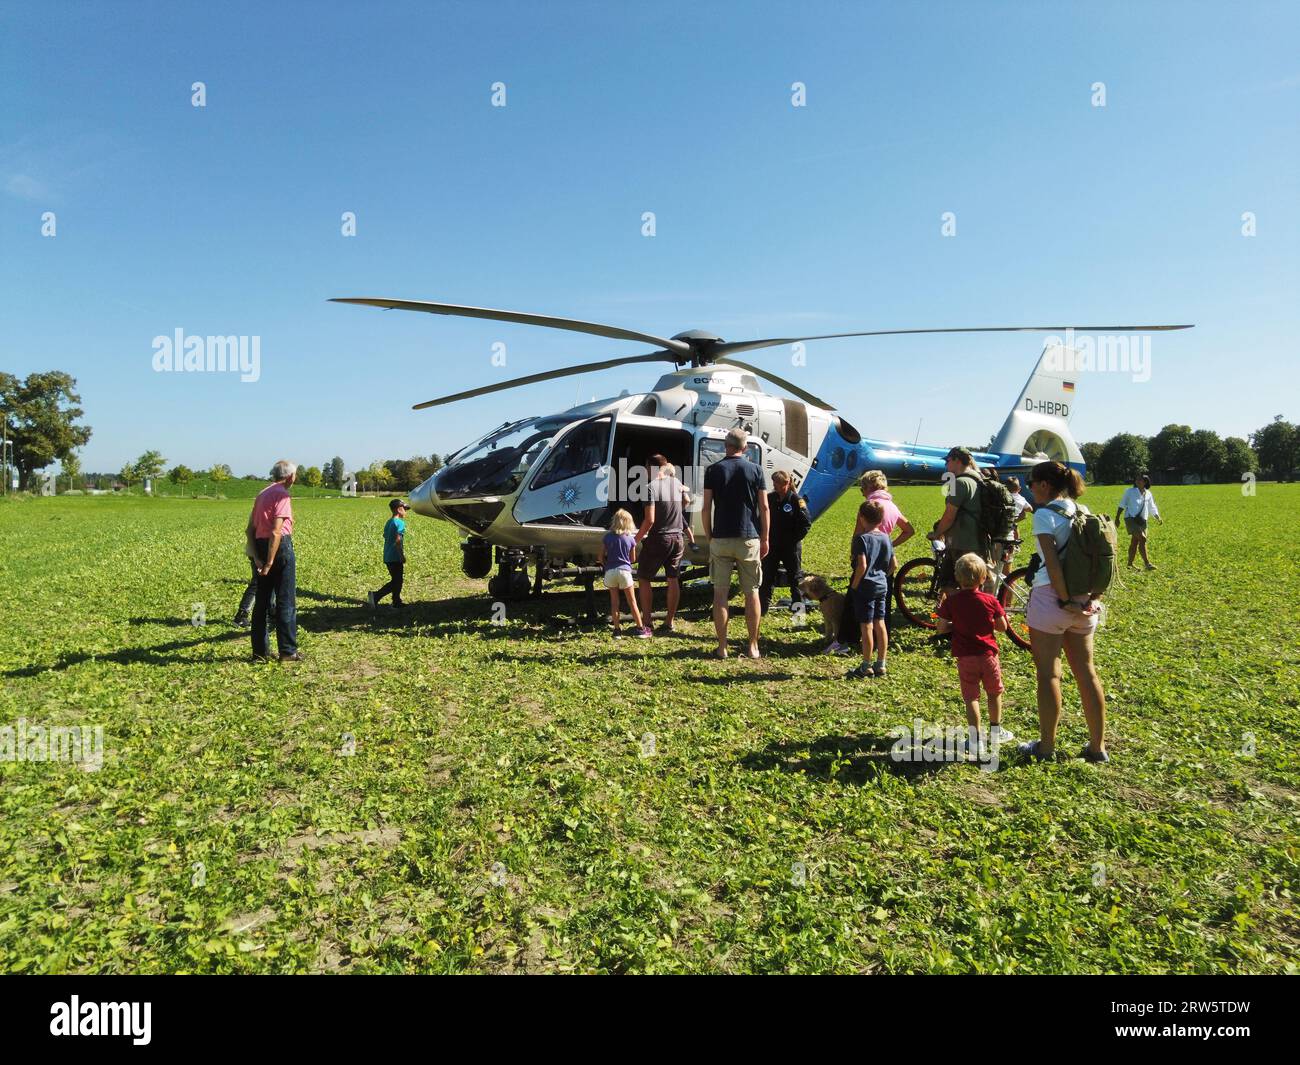 Garching BEI Muenchen, Allemagne - hélicoptère de la police bavaroise a atterri dans un champ, entouré de curieux passants amicaux accueillis Banque D'Images